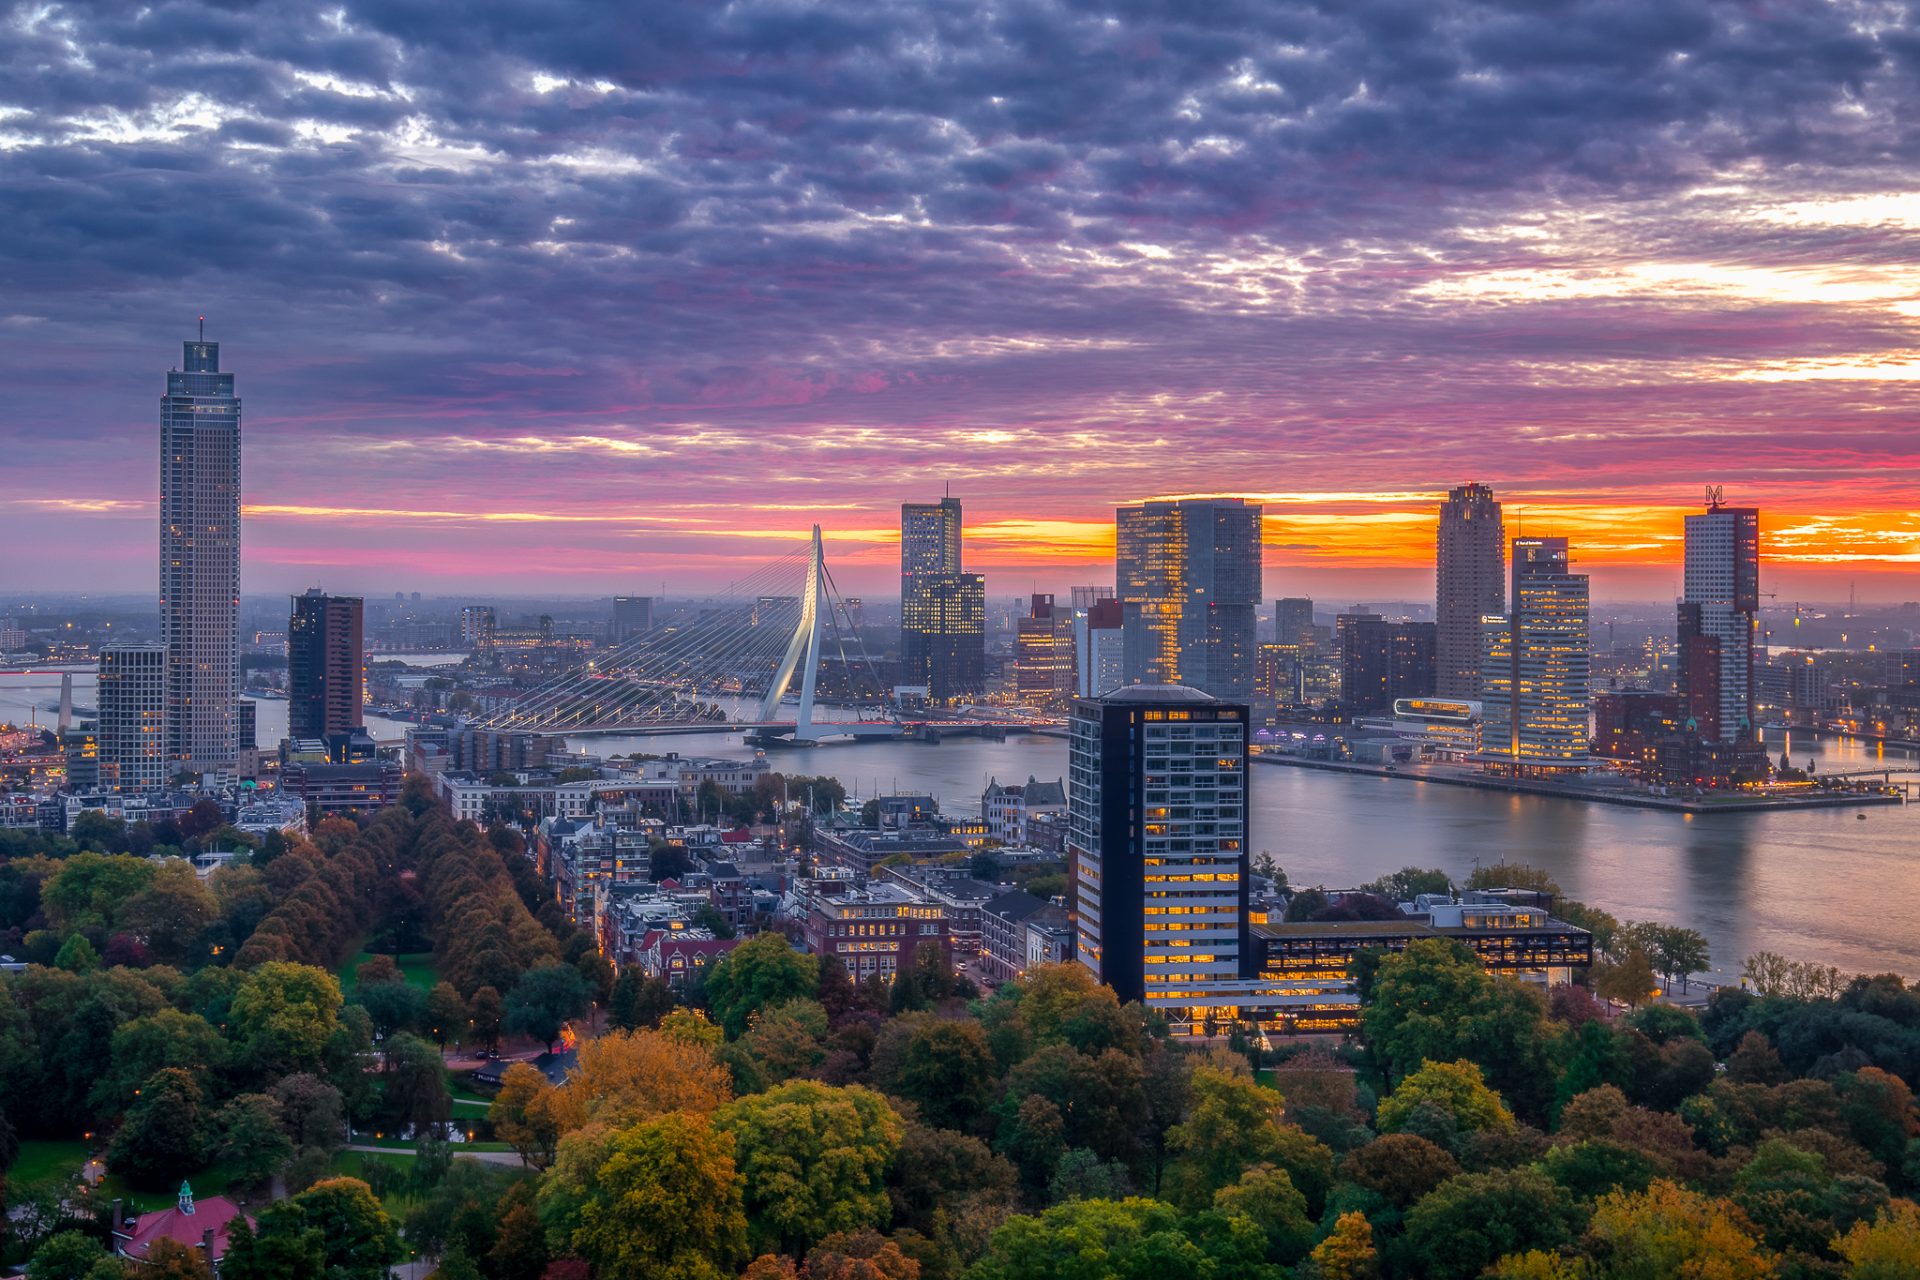 Skyline Rotterdam vanaf de Euromast met zonsopkomst